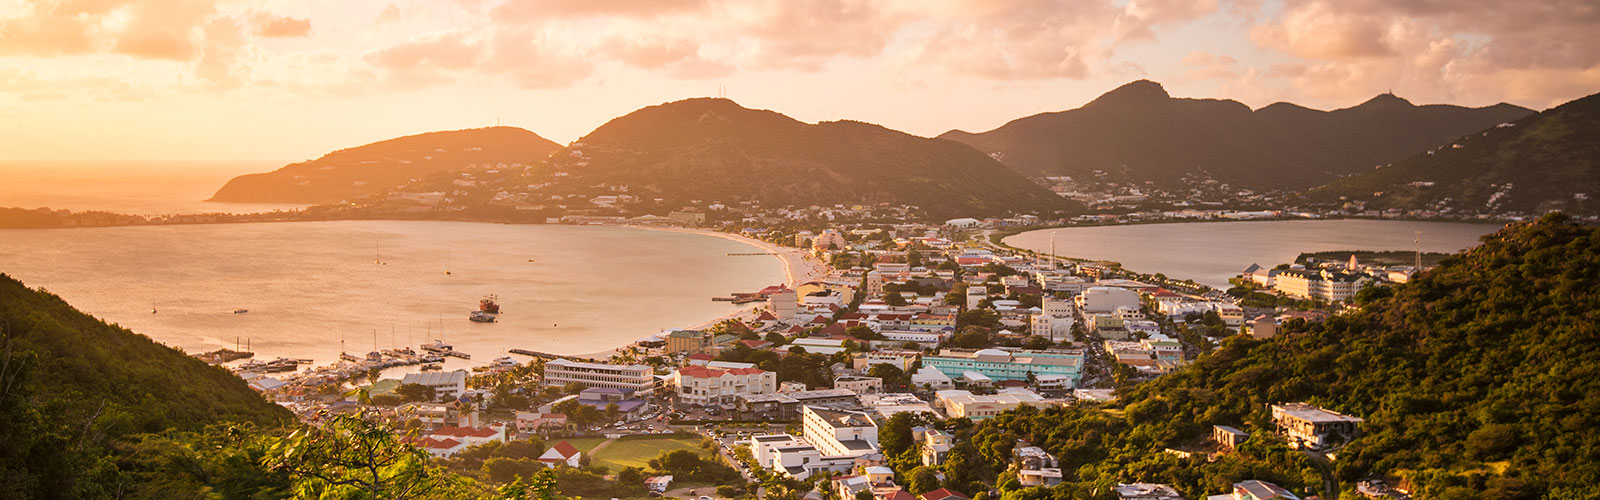 St. Maarten, Antilles Néerlandaises